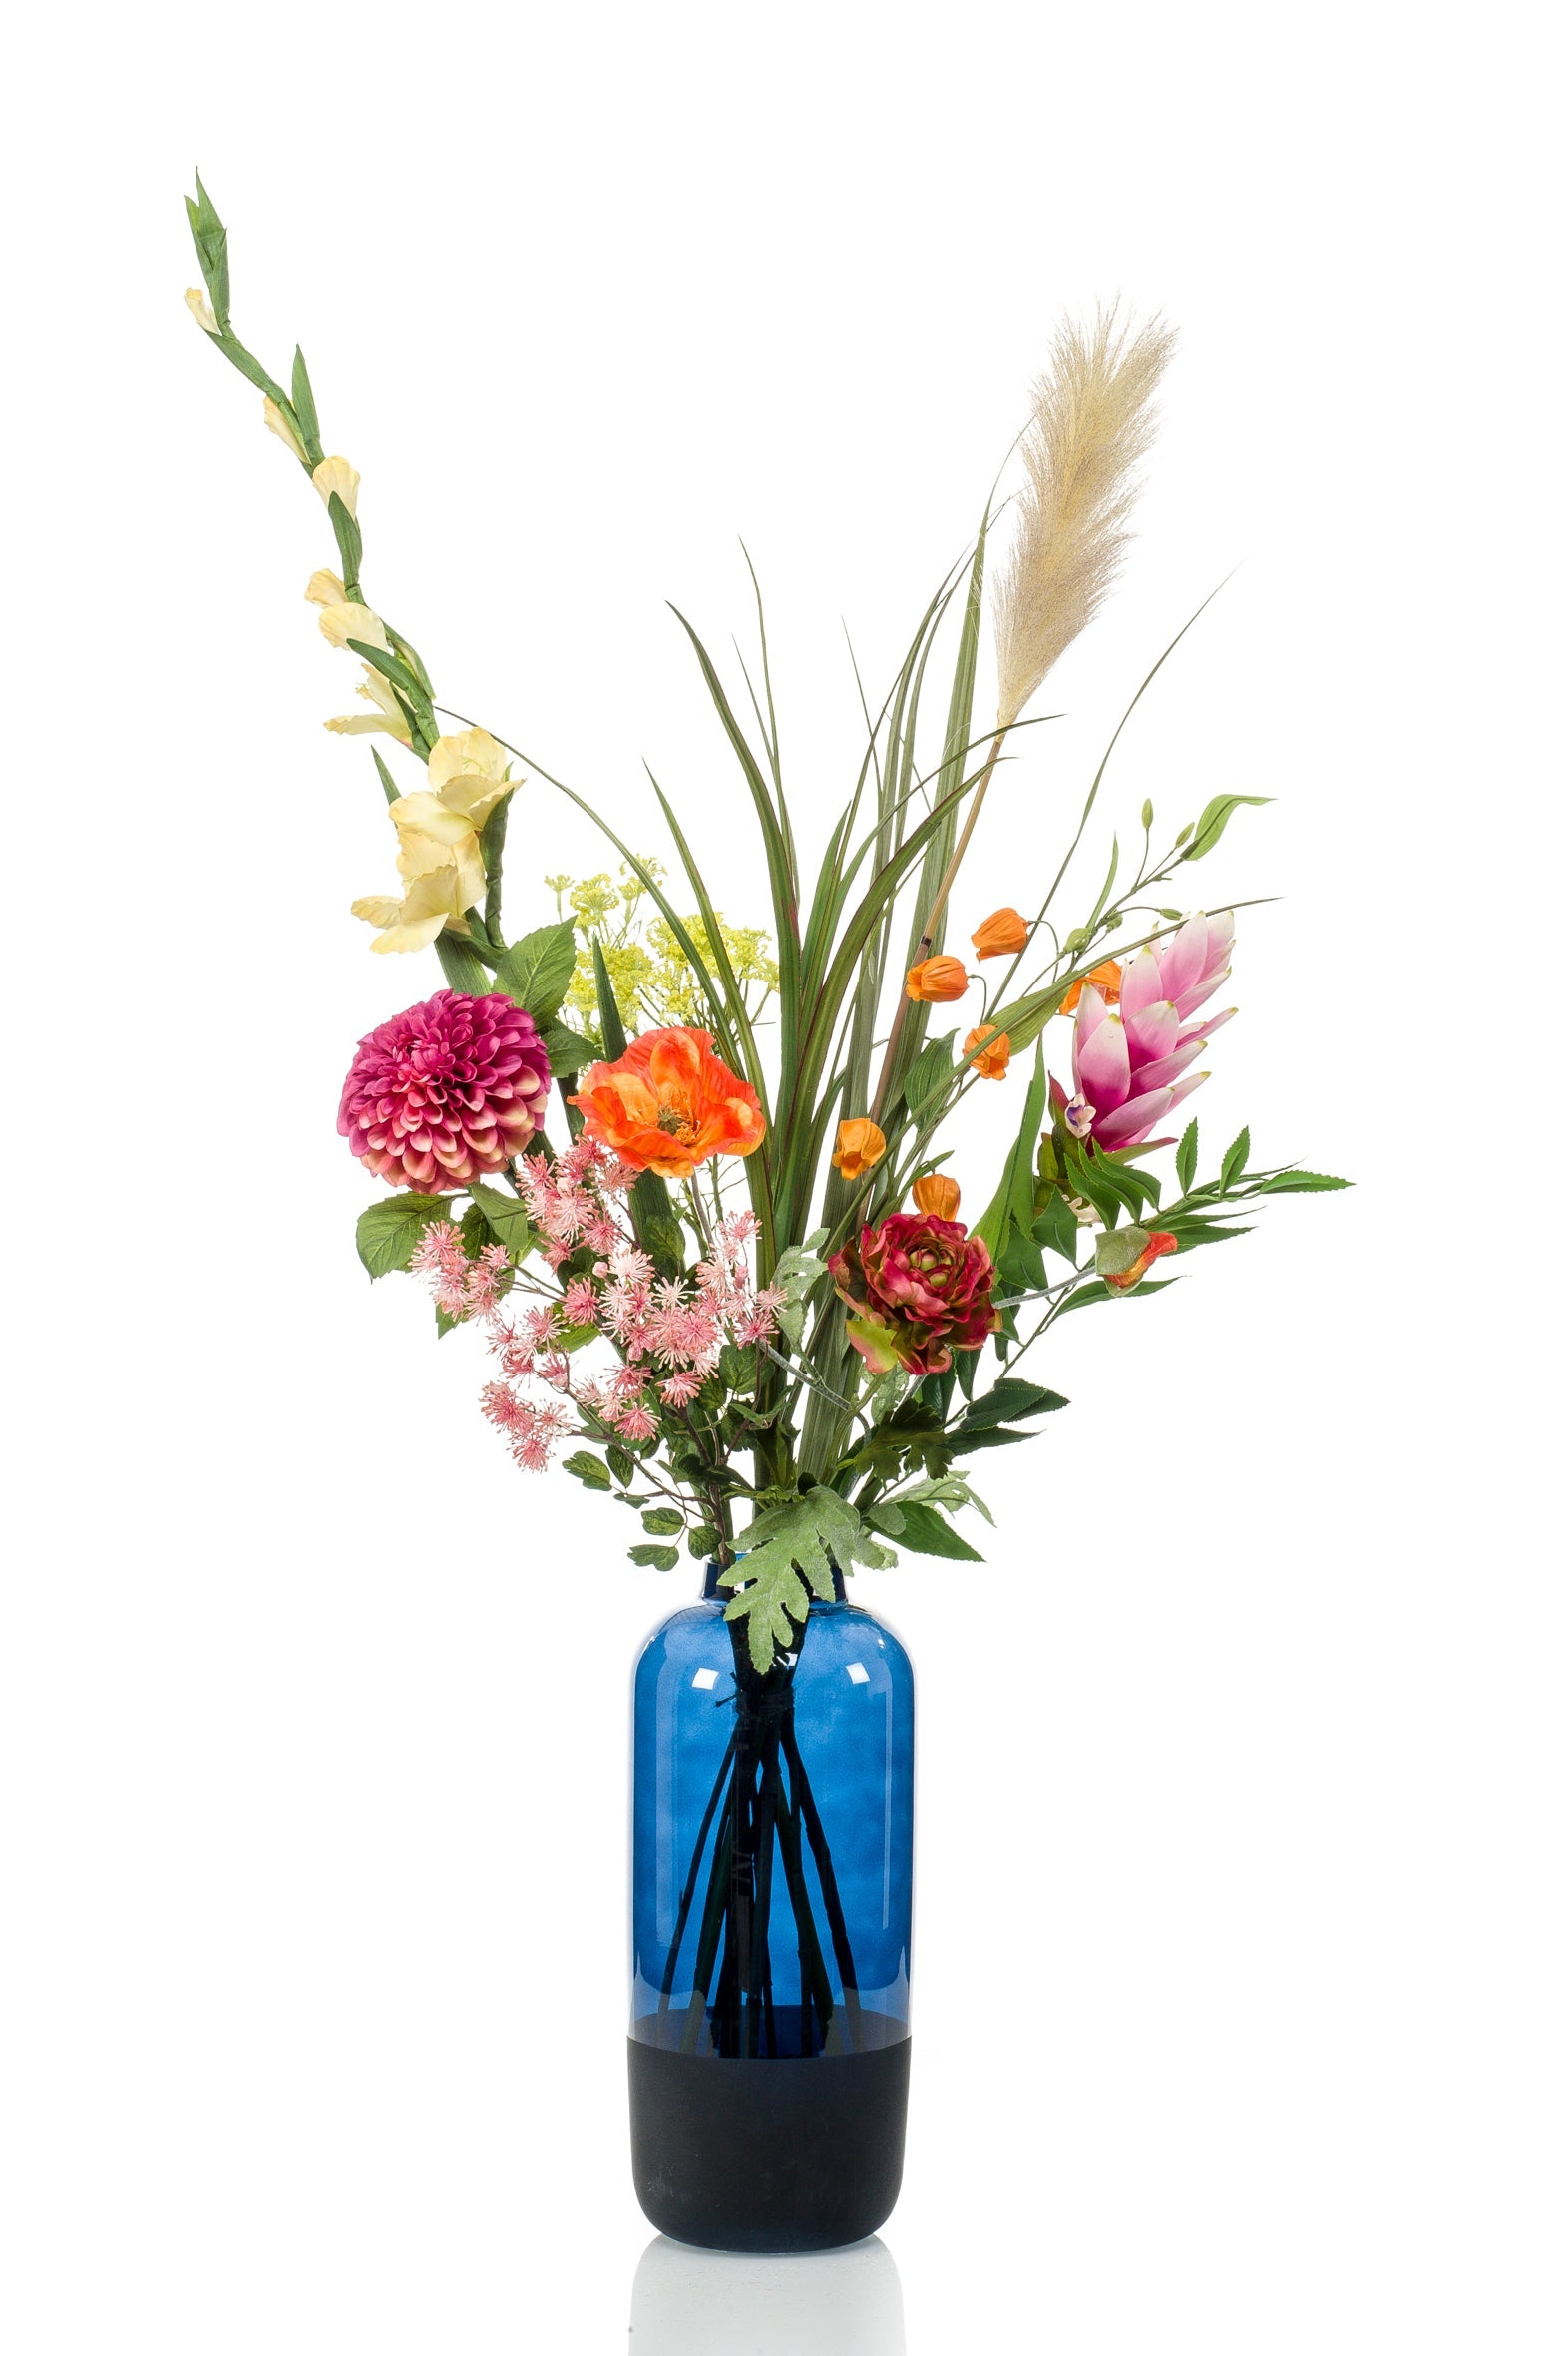 kunstbloemen kopen is een ideale keuze voor mensen die lang willen geniet van een prachtige bos bloemen